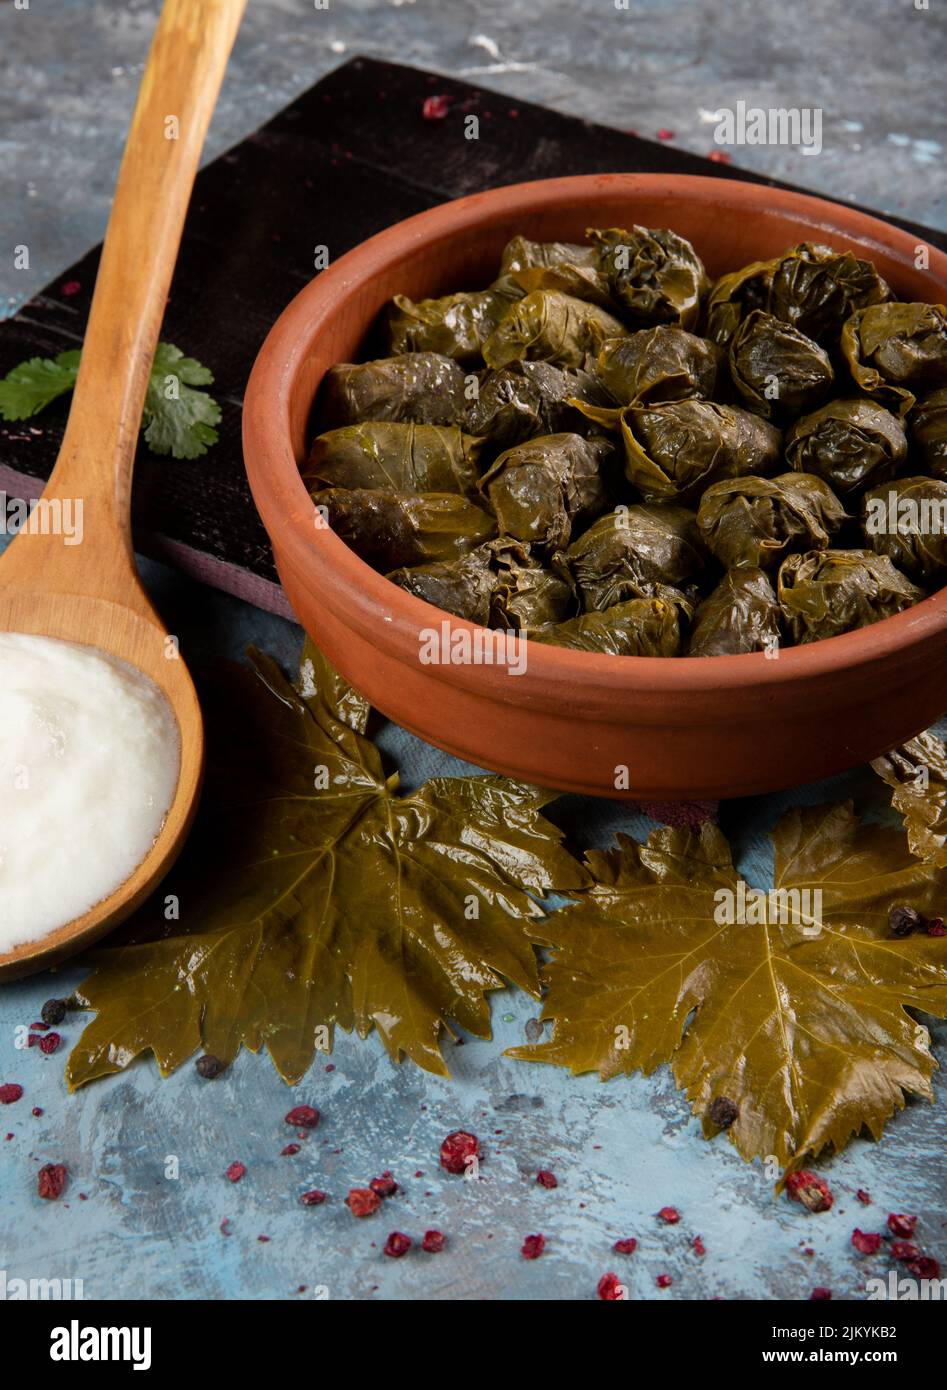 Eine vertikale Nahaufnahme des östlichen mediterranen Gerichts Dolma serviert mit griechischem Joghurt Stockfoto